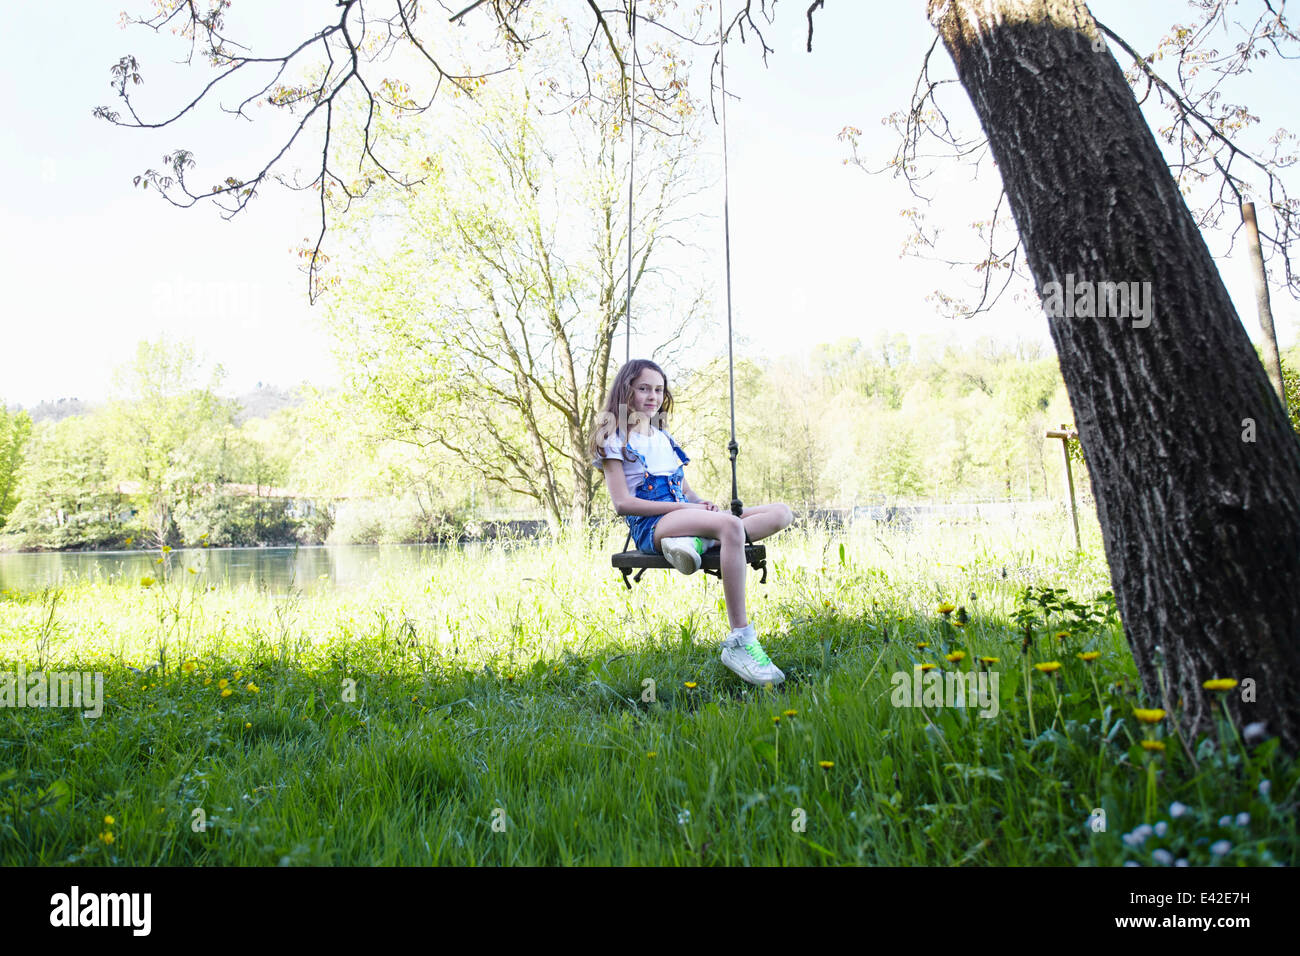 Girl on swing in tree, portrait Stock Photo